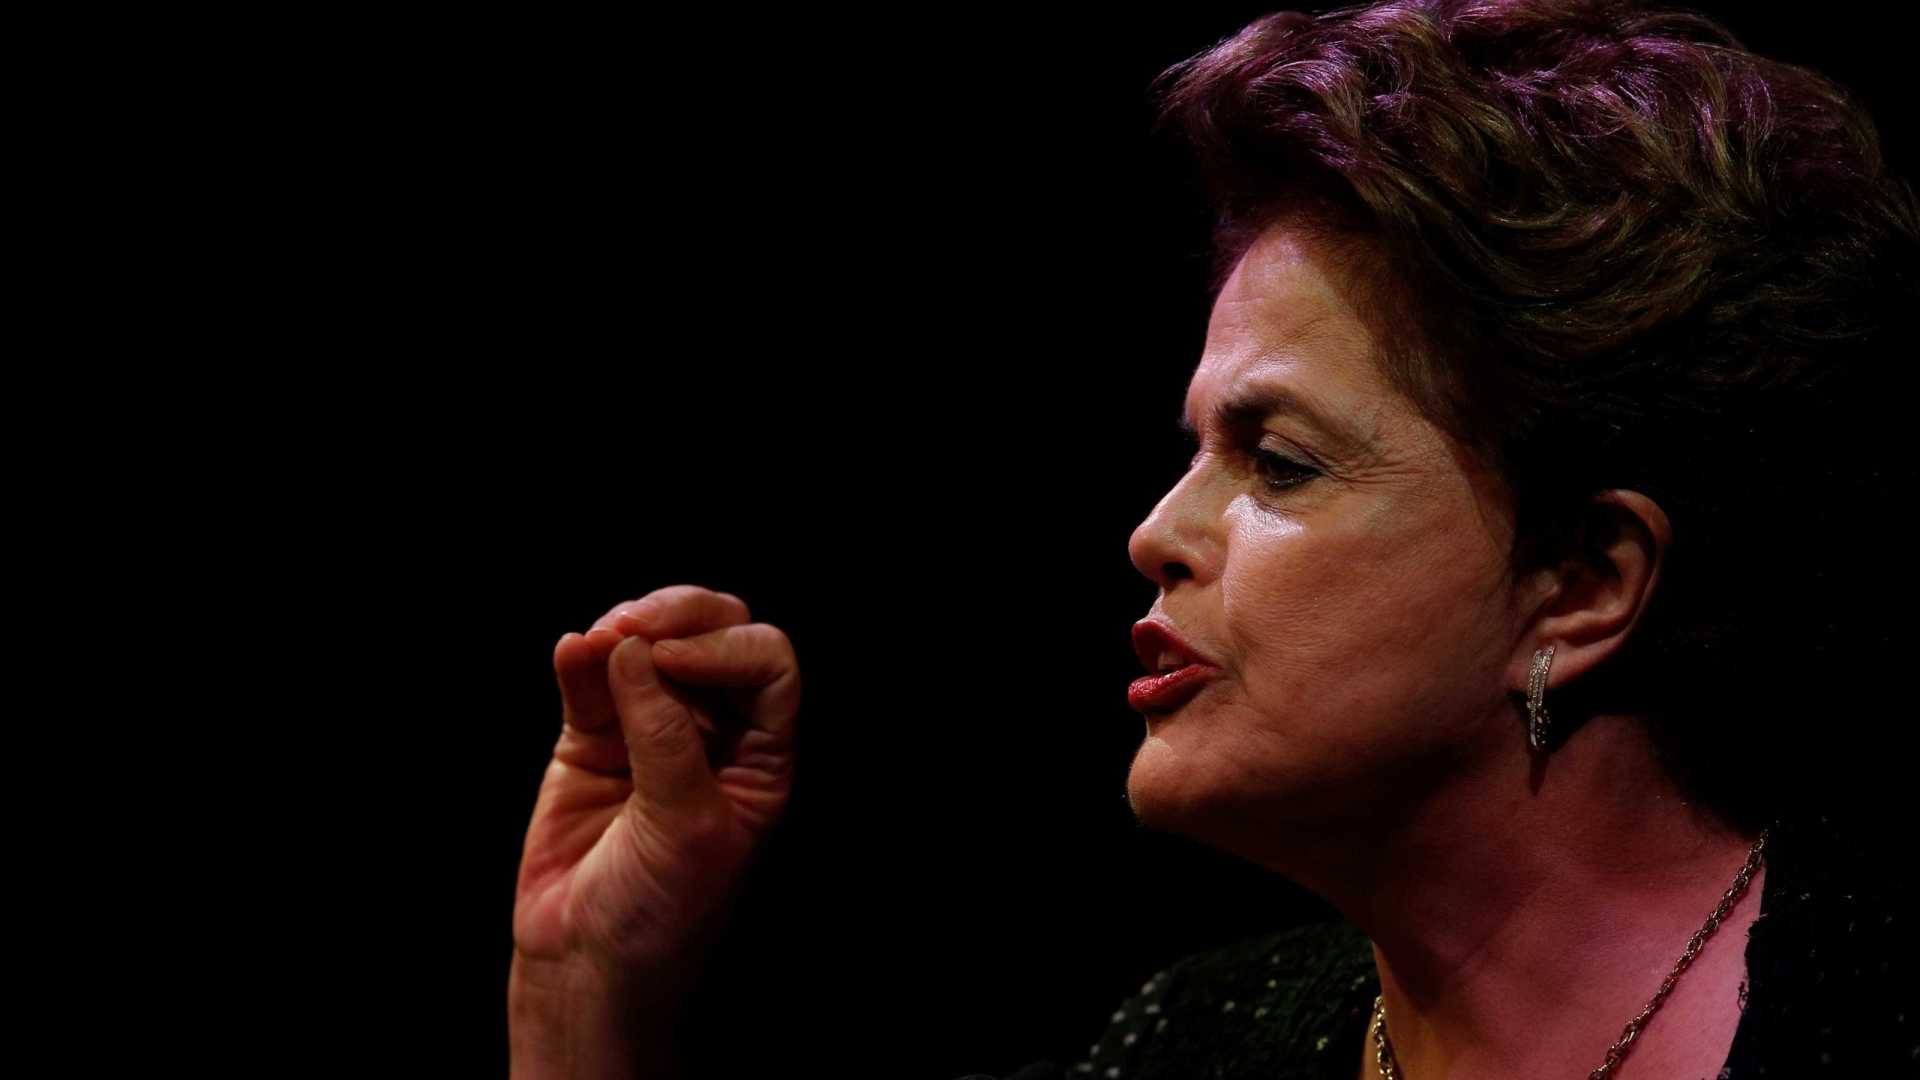 ‘Lula participará da eleição preso ou solto’, diz Dilma na Finlândia